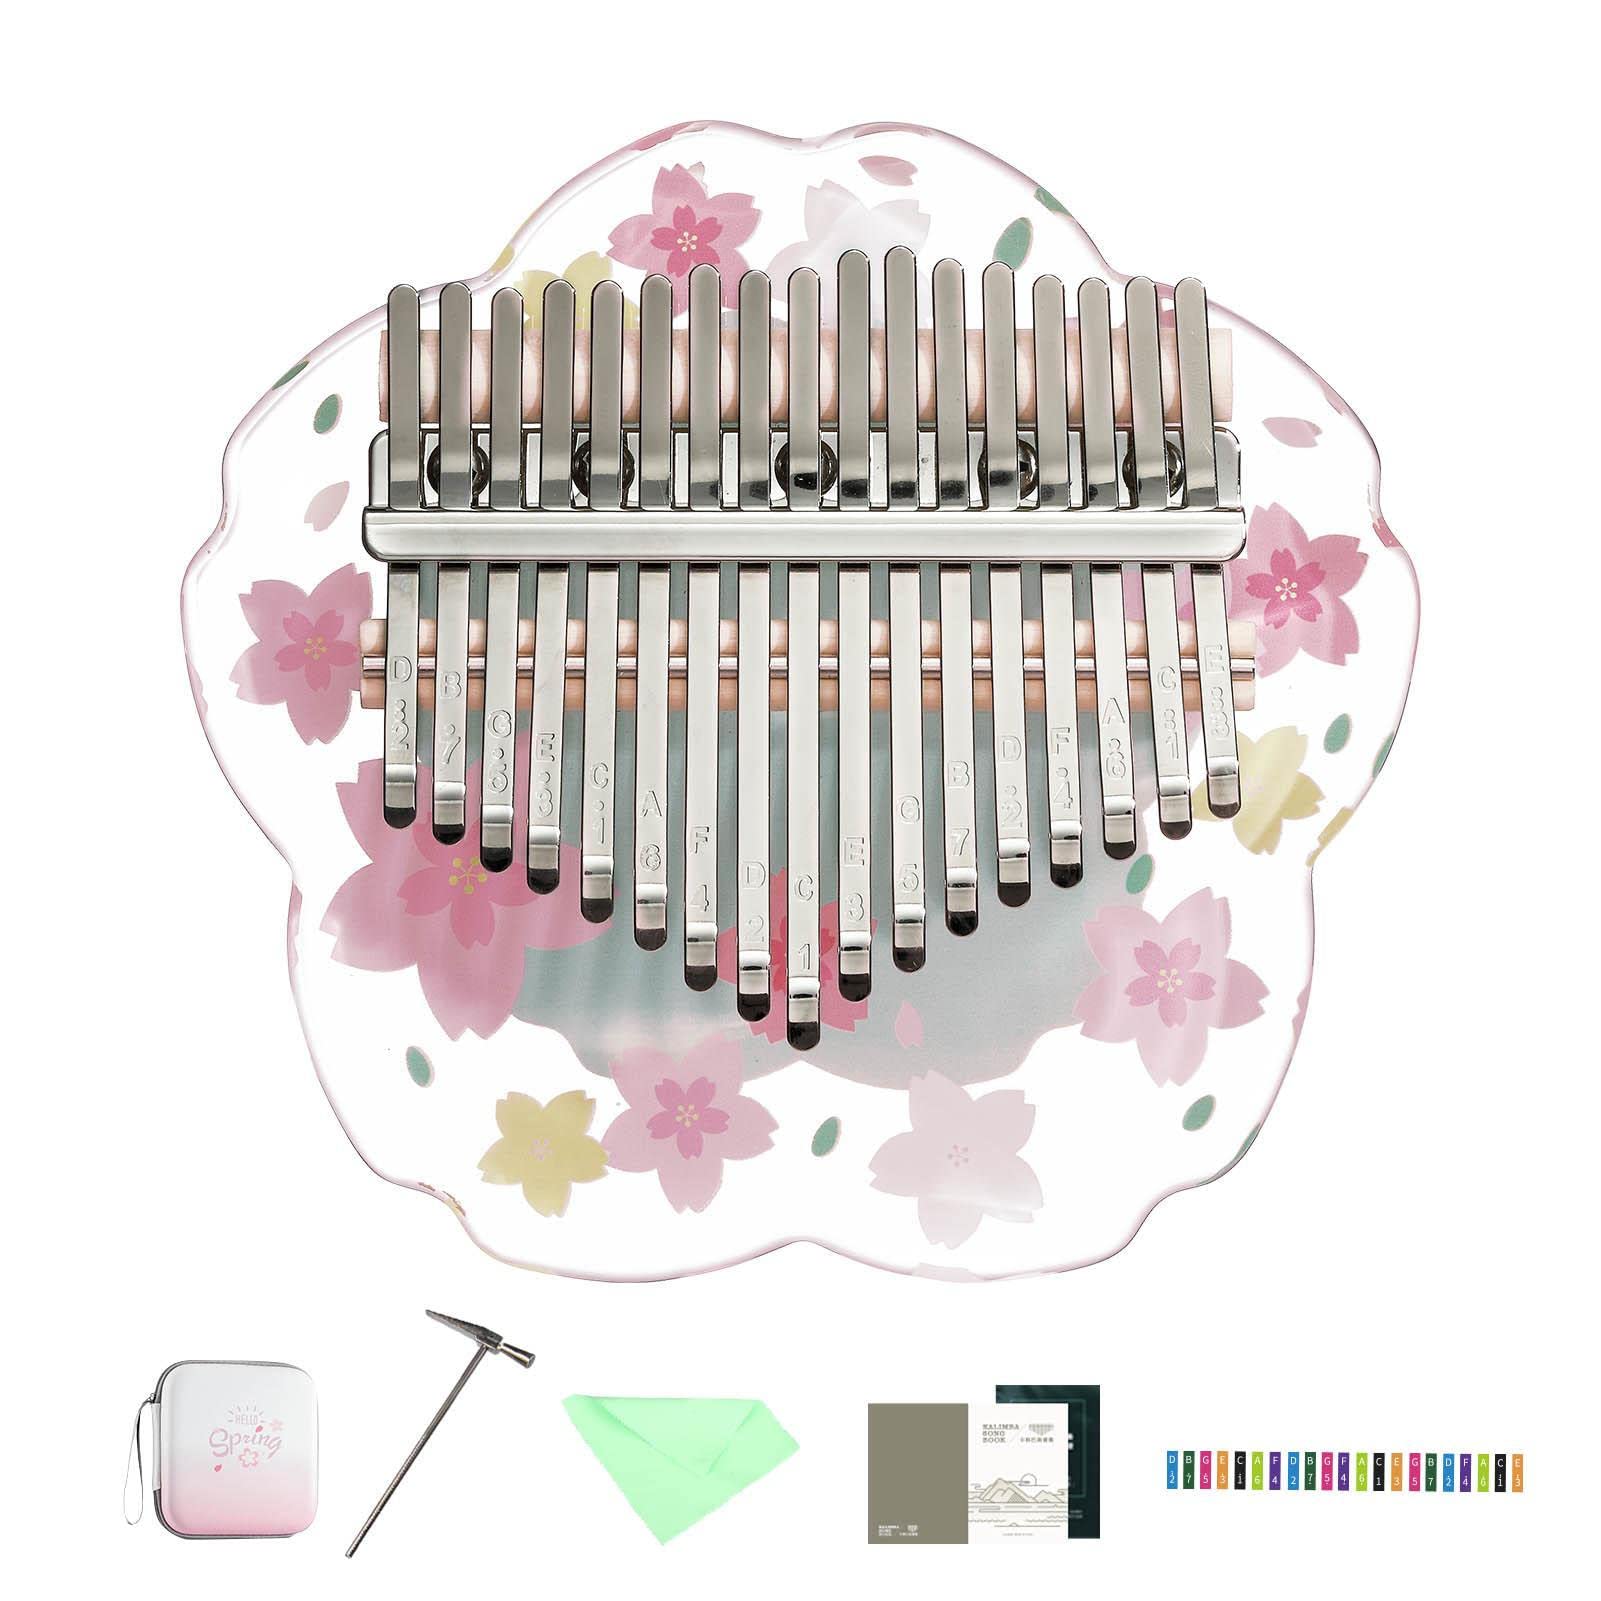 Finger-Daumen-Klavier - Mini-Musikinstrumente in Kirschblütenform aus Acryl mit 17 Tasten - Transparente Kristallkalimba, Musikinstrumentengeschenke für Kinder Delr